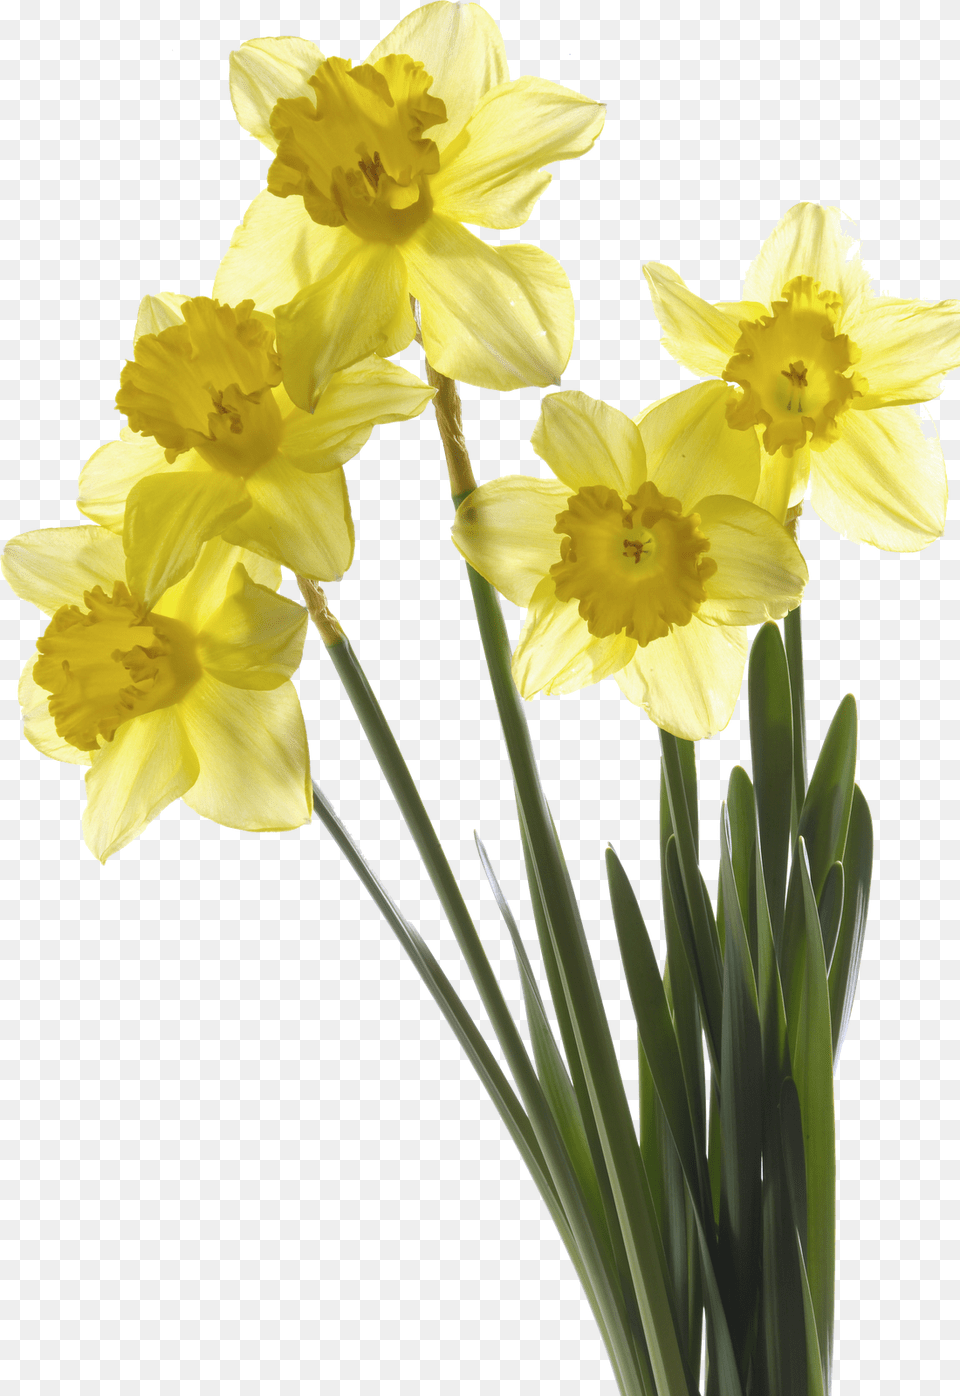 Transparent Flores Para Photoshop Flores Para Photoshop, Daffodil, Flower, Plant Png